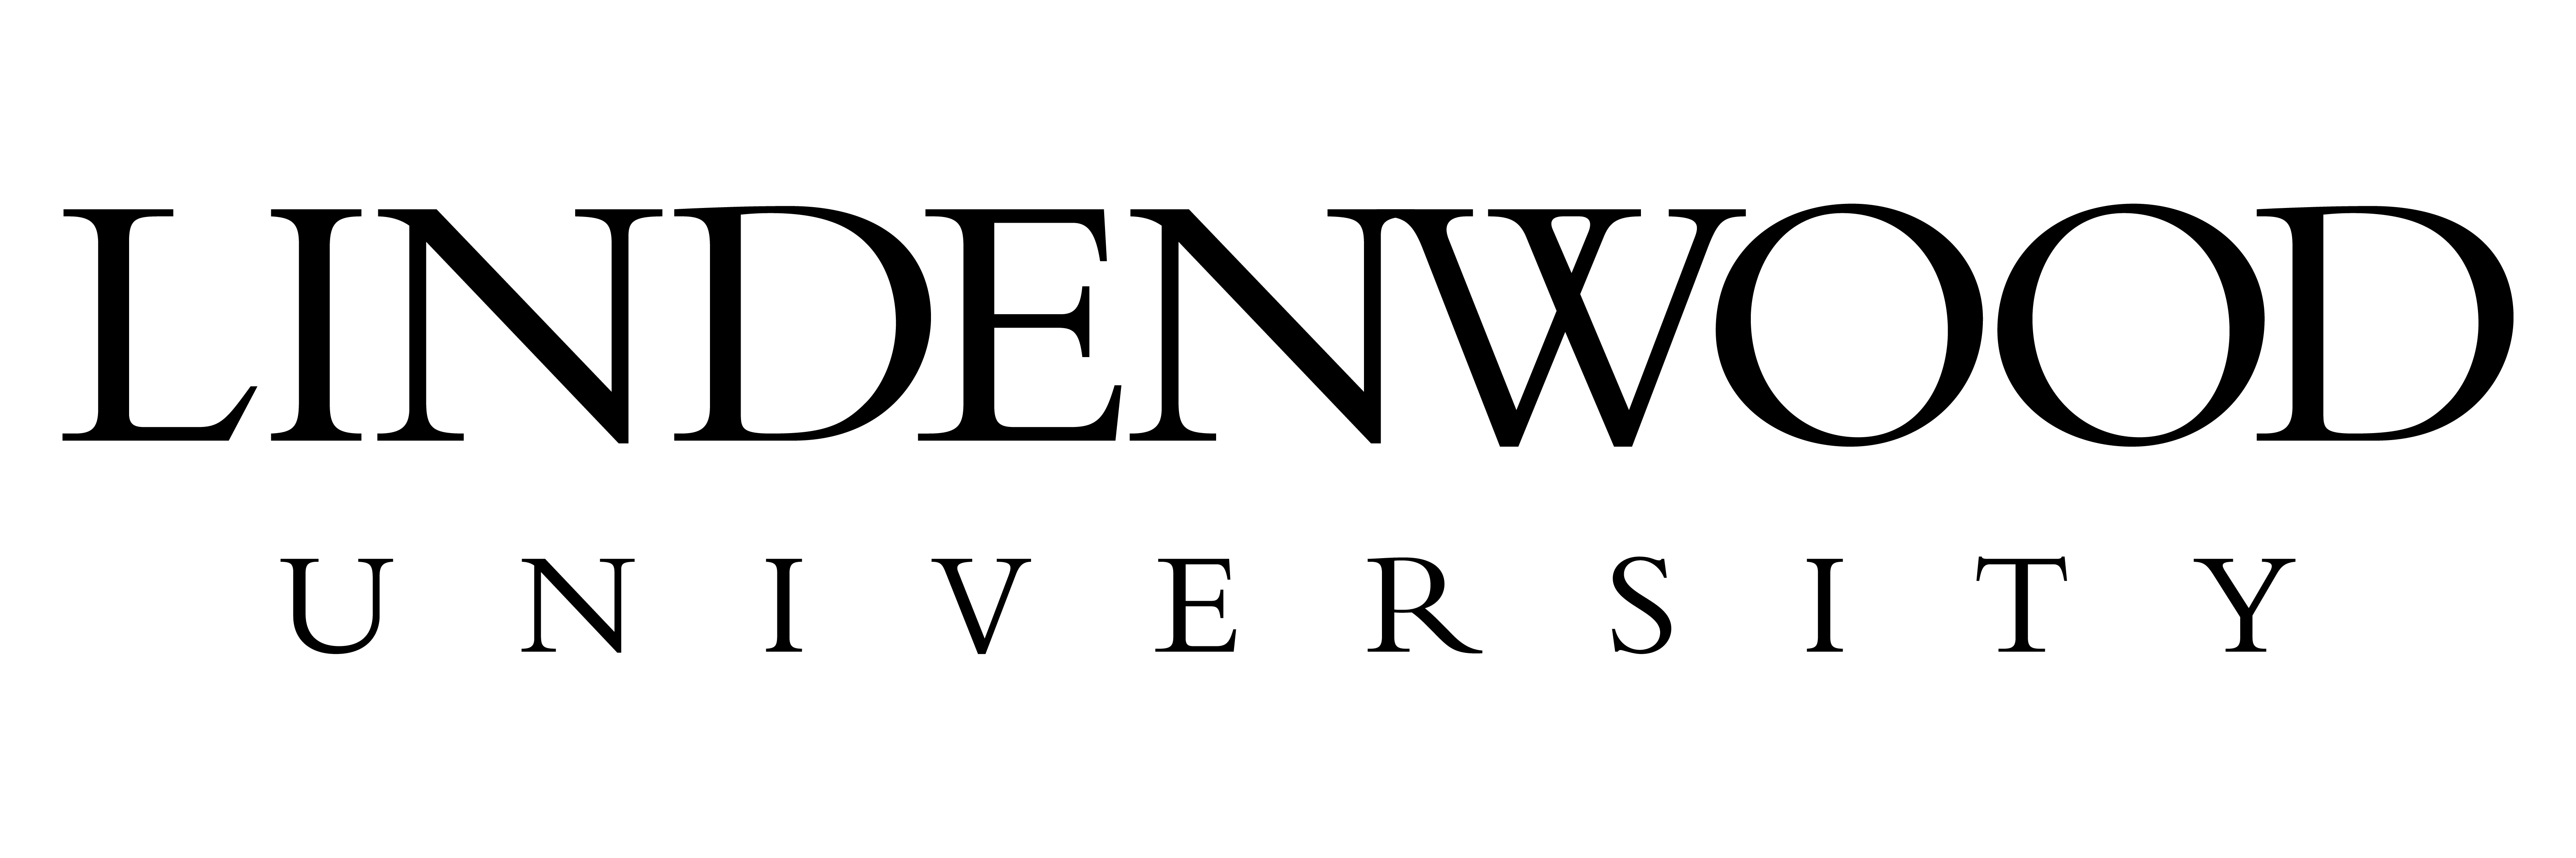 Lindenwood University - Primary Logo - Black